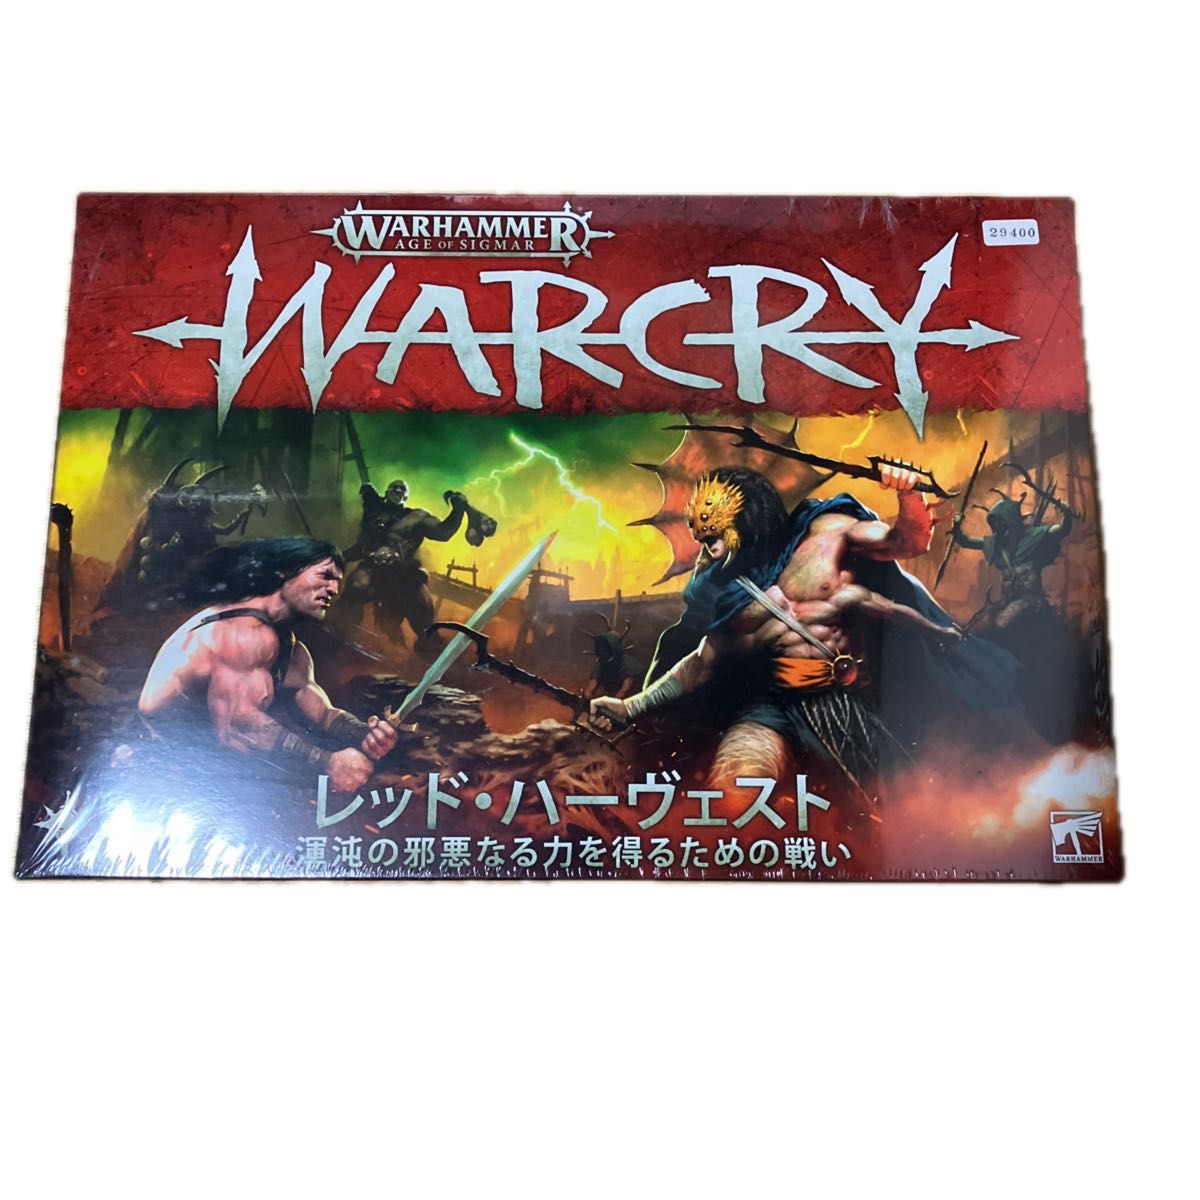 ウォークライ: レッドハーヴェスト 日本語版　warhammer WARCRY